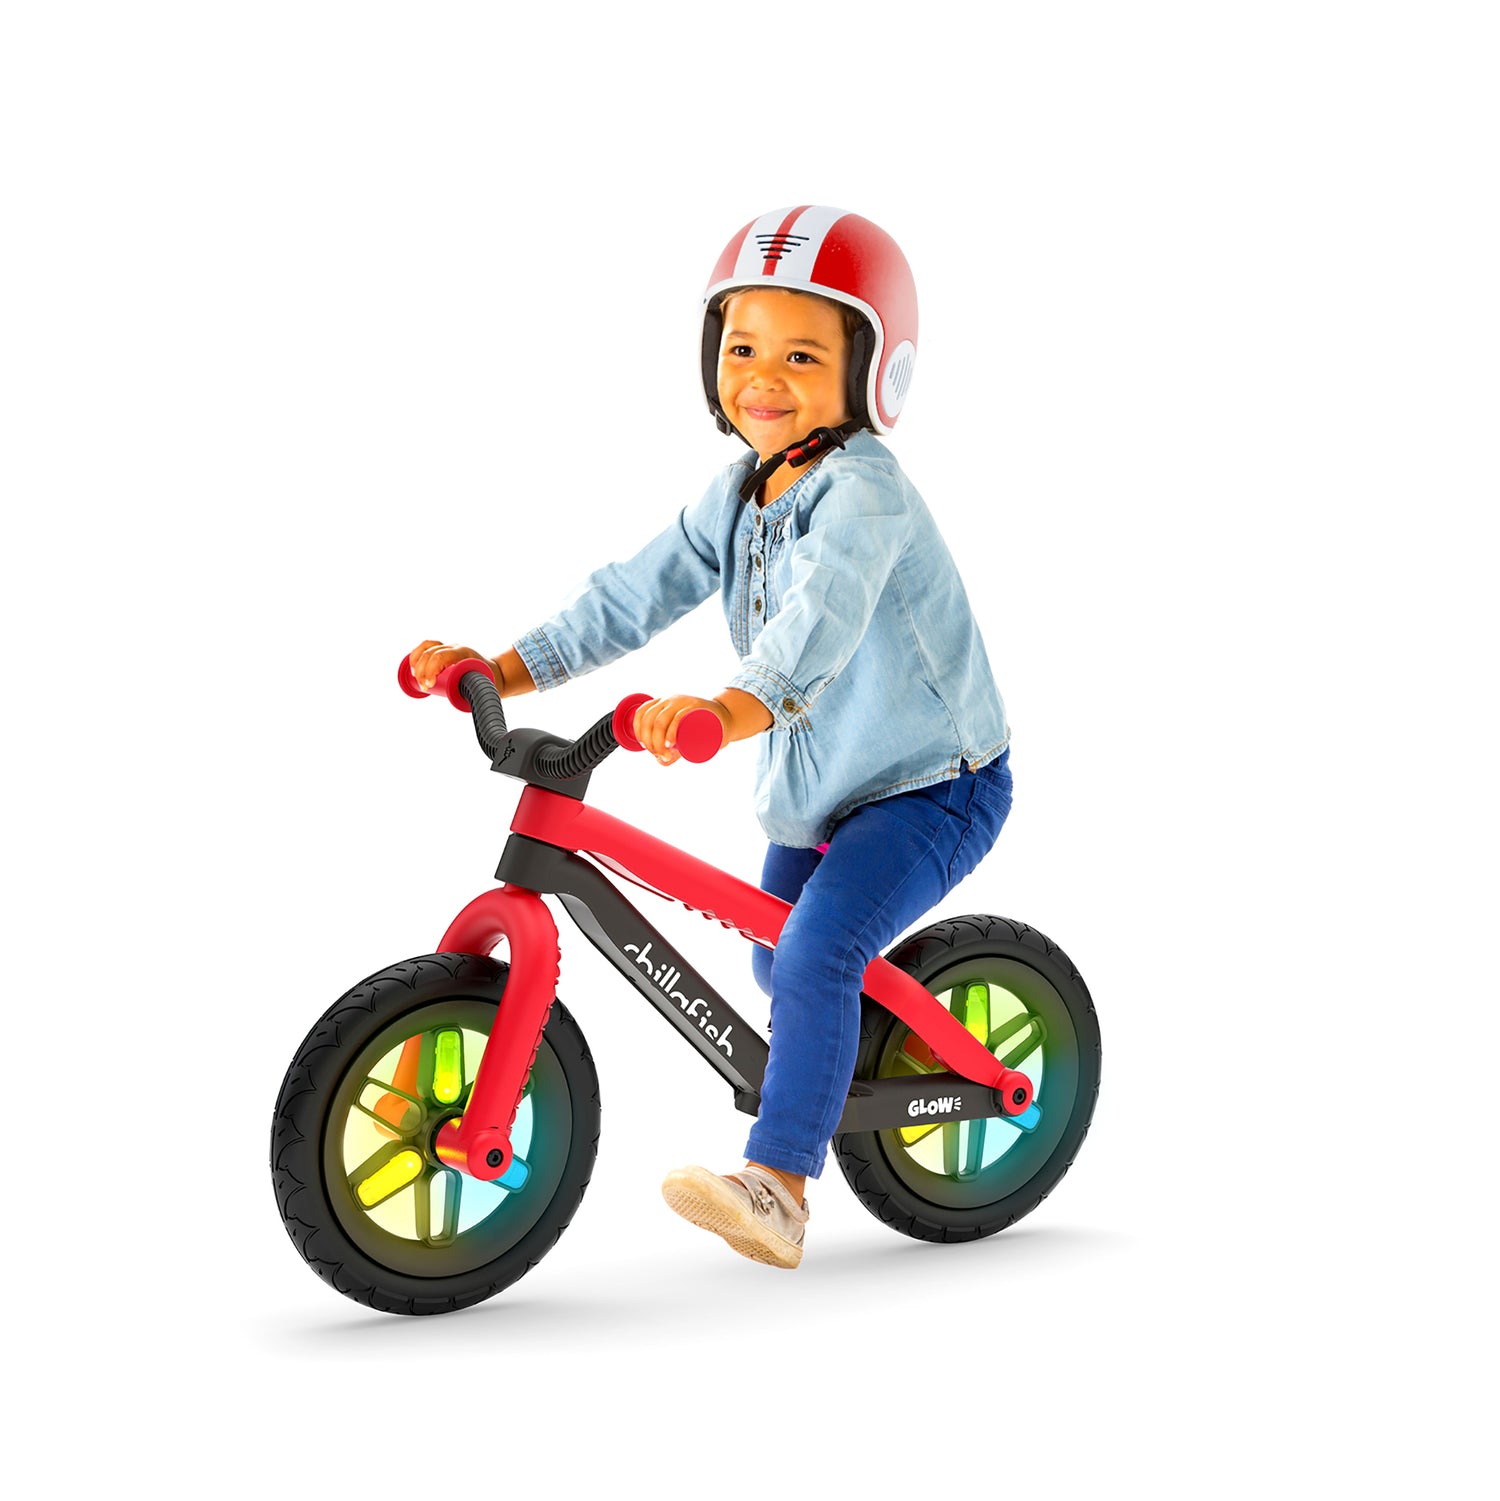 Bicicleta sin pedales Chillafish BMXI para niños de 2 a 5 años